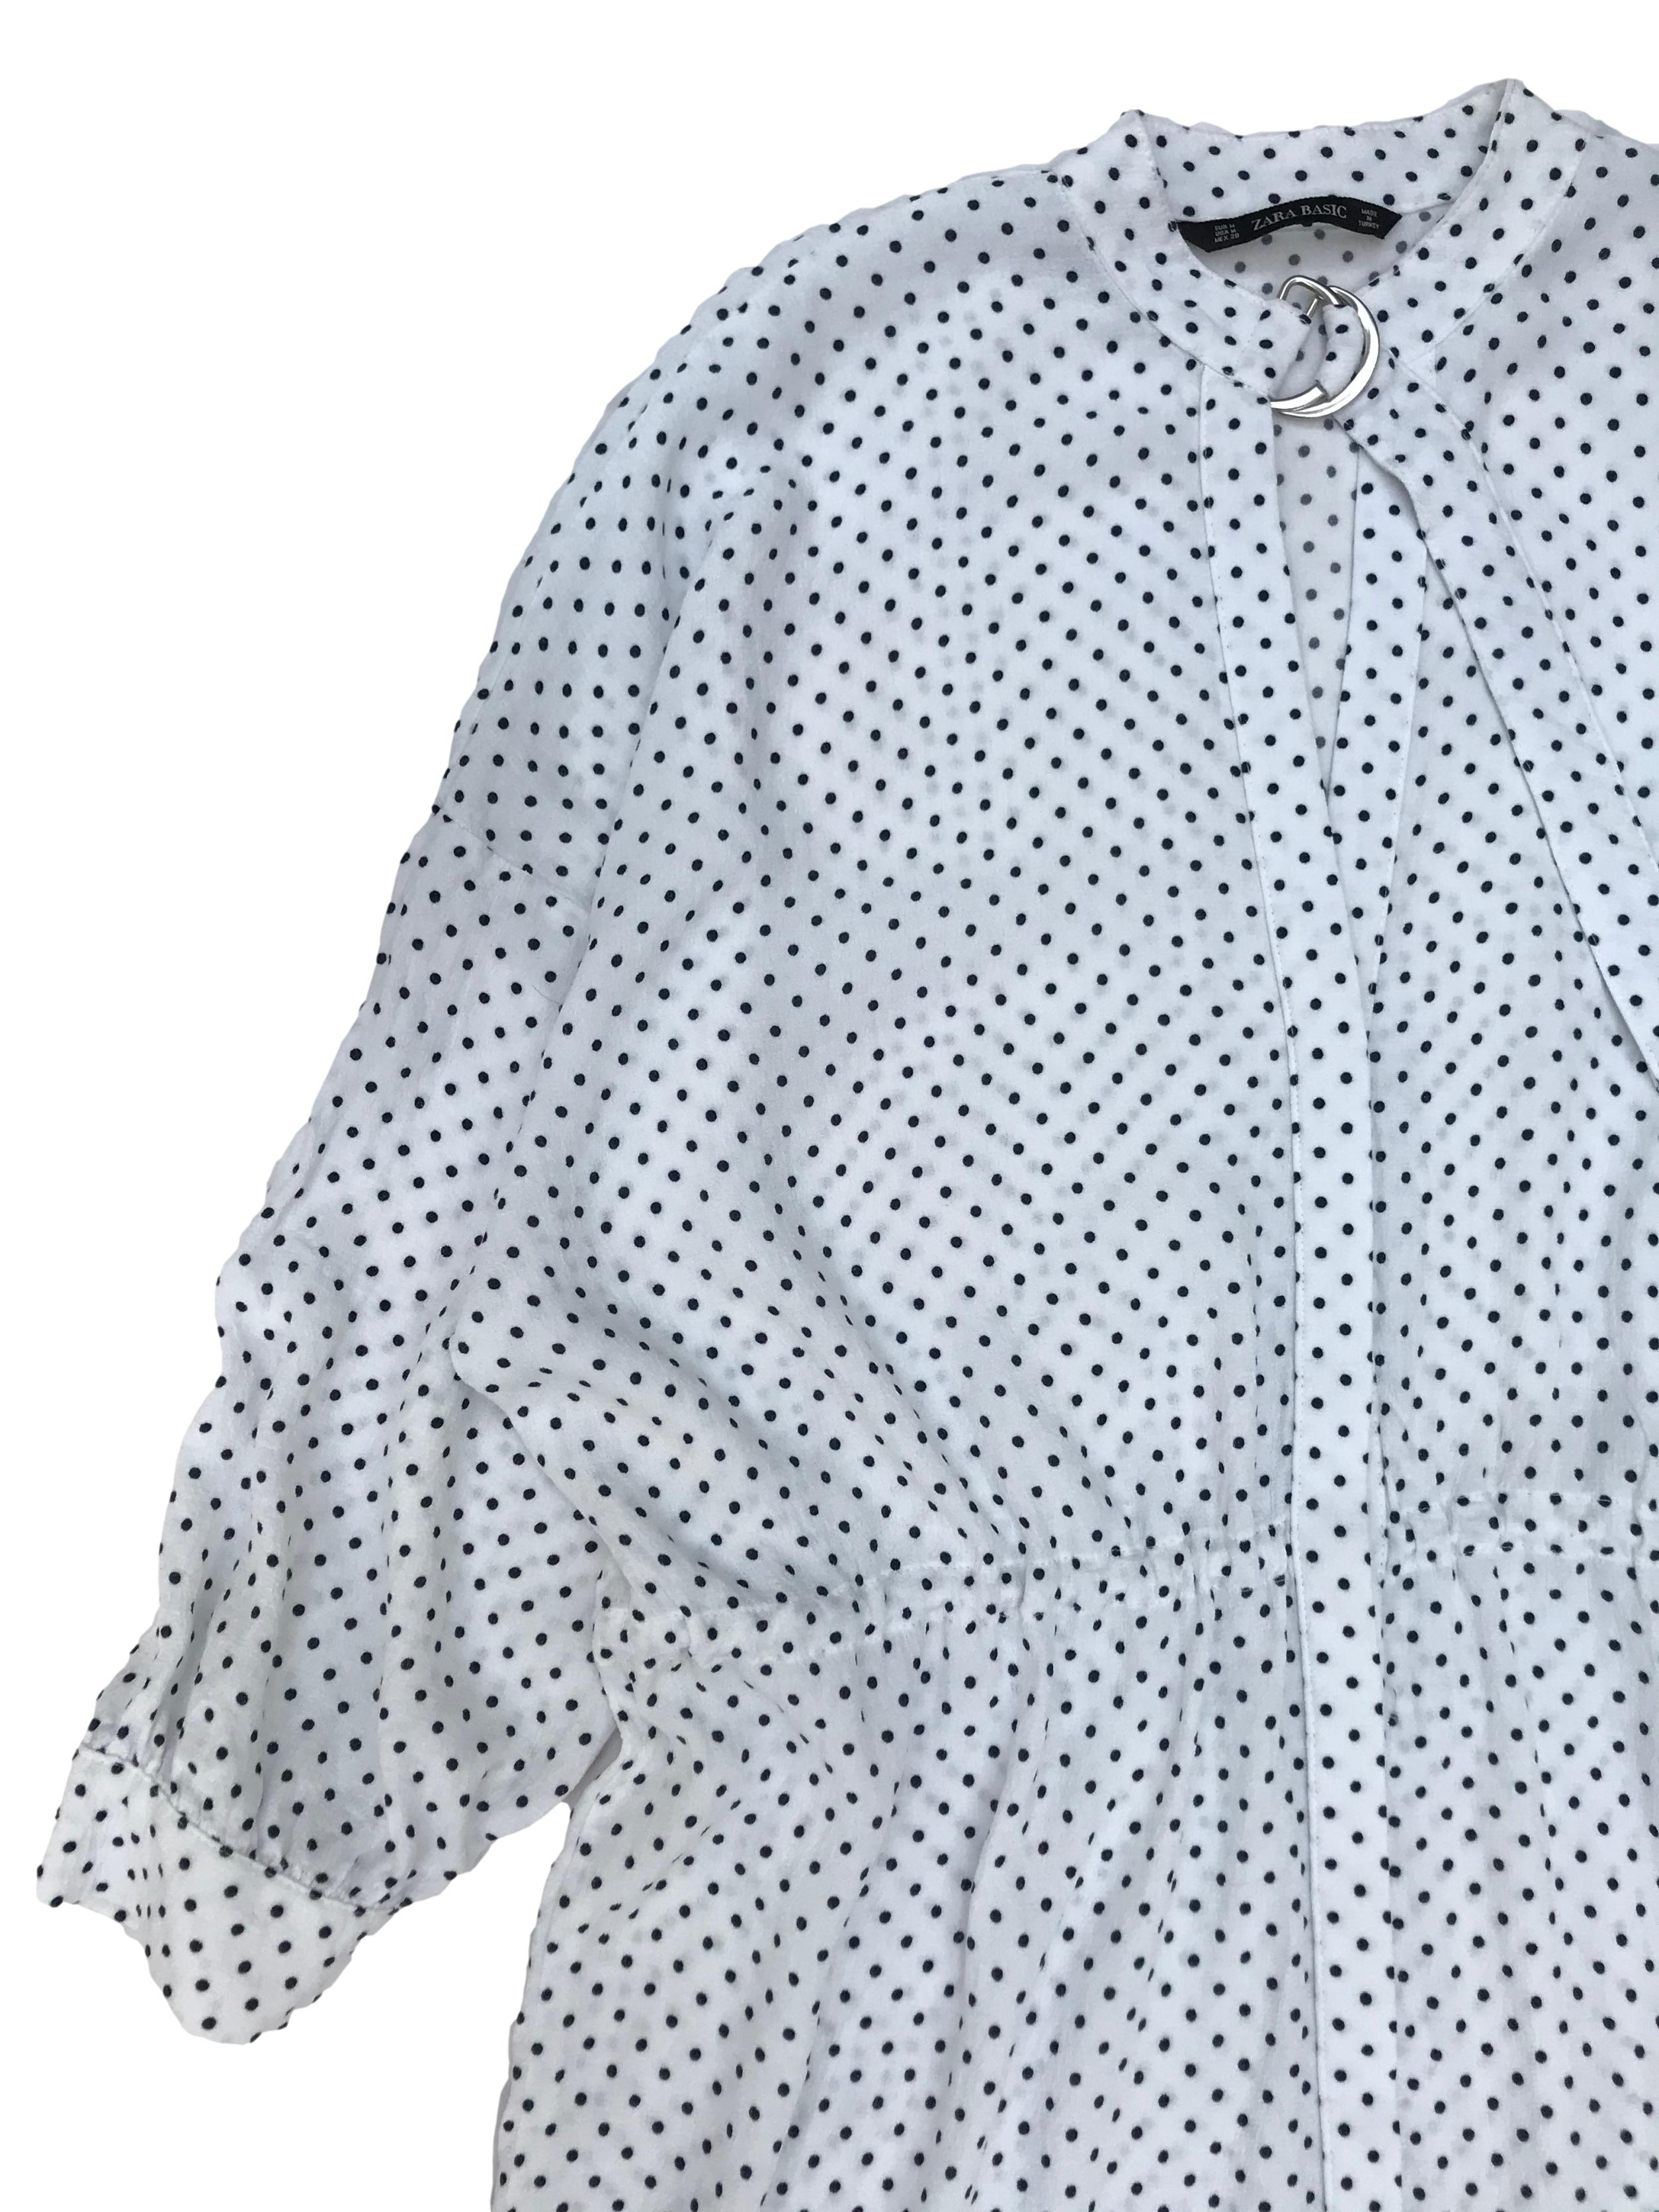 Vestido oversize Zara 100% viscosa texturada blanca con dots azules, fila de botones al centro, escote en V y correa en el cuello, tira para regular la cintura. Ancho 120cm Largo 88cm